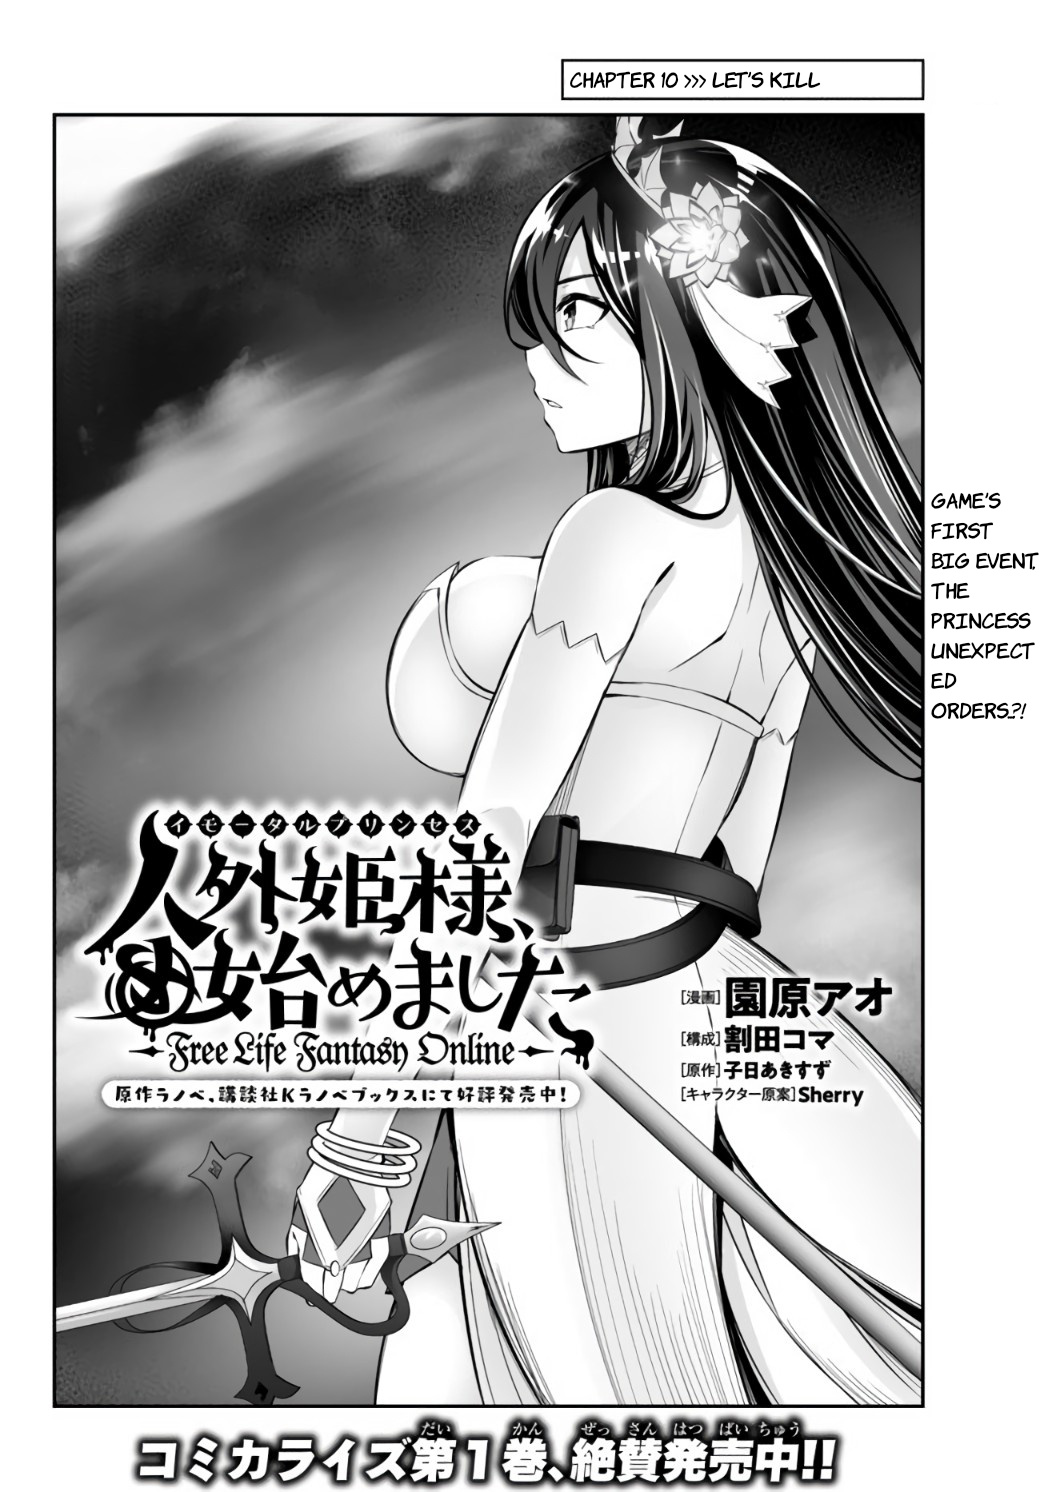 Jingai Hime Sama, Hajimemashita - Free Life Fantasy Online Vol.2 Chapter 10: Let's Kill - Picture 2